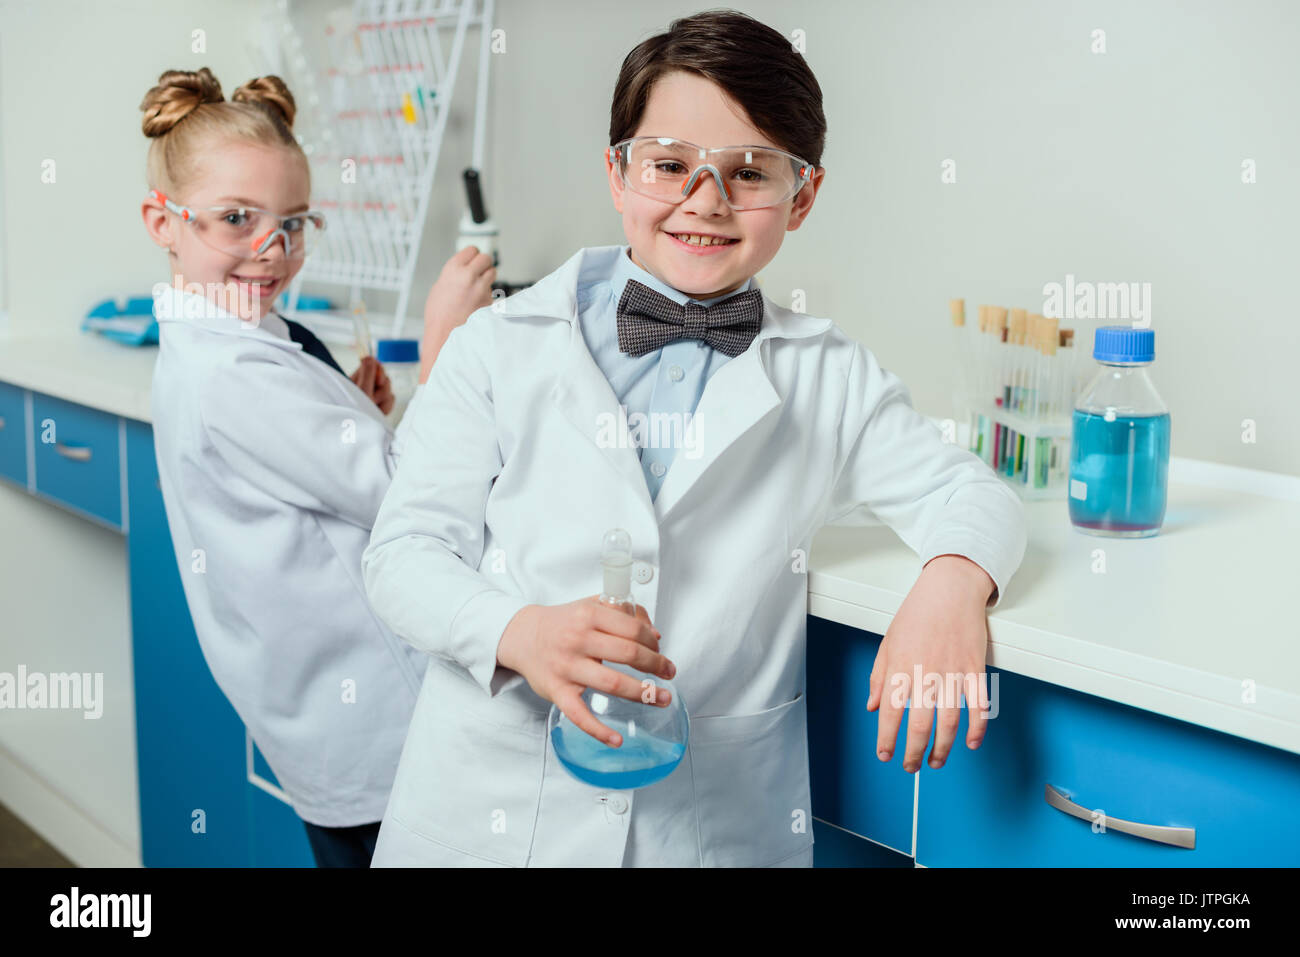 Schüler mit Science Lab Equipment im chemischen Labor, Wissenschaftler kids team konzept Stockfoto